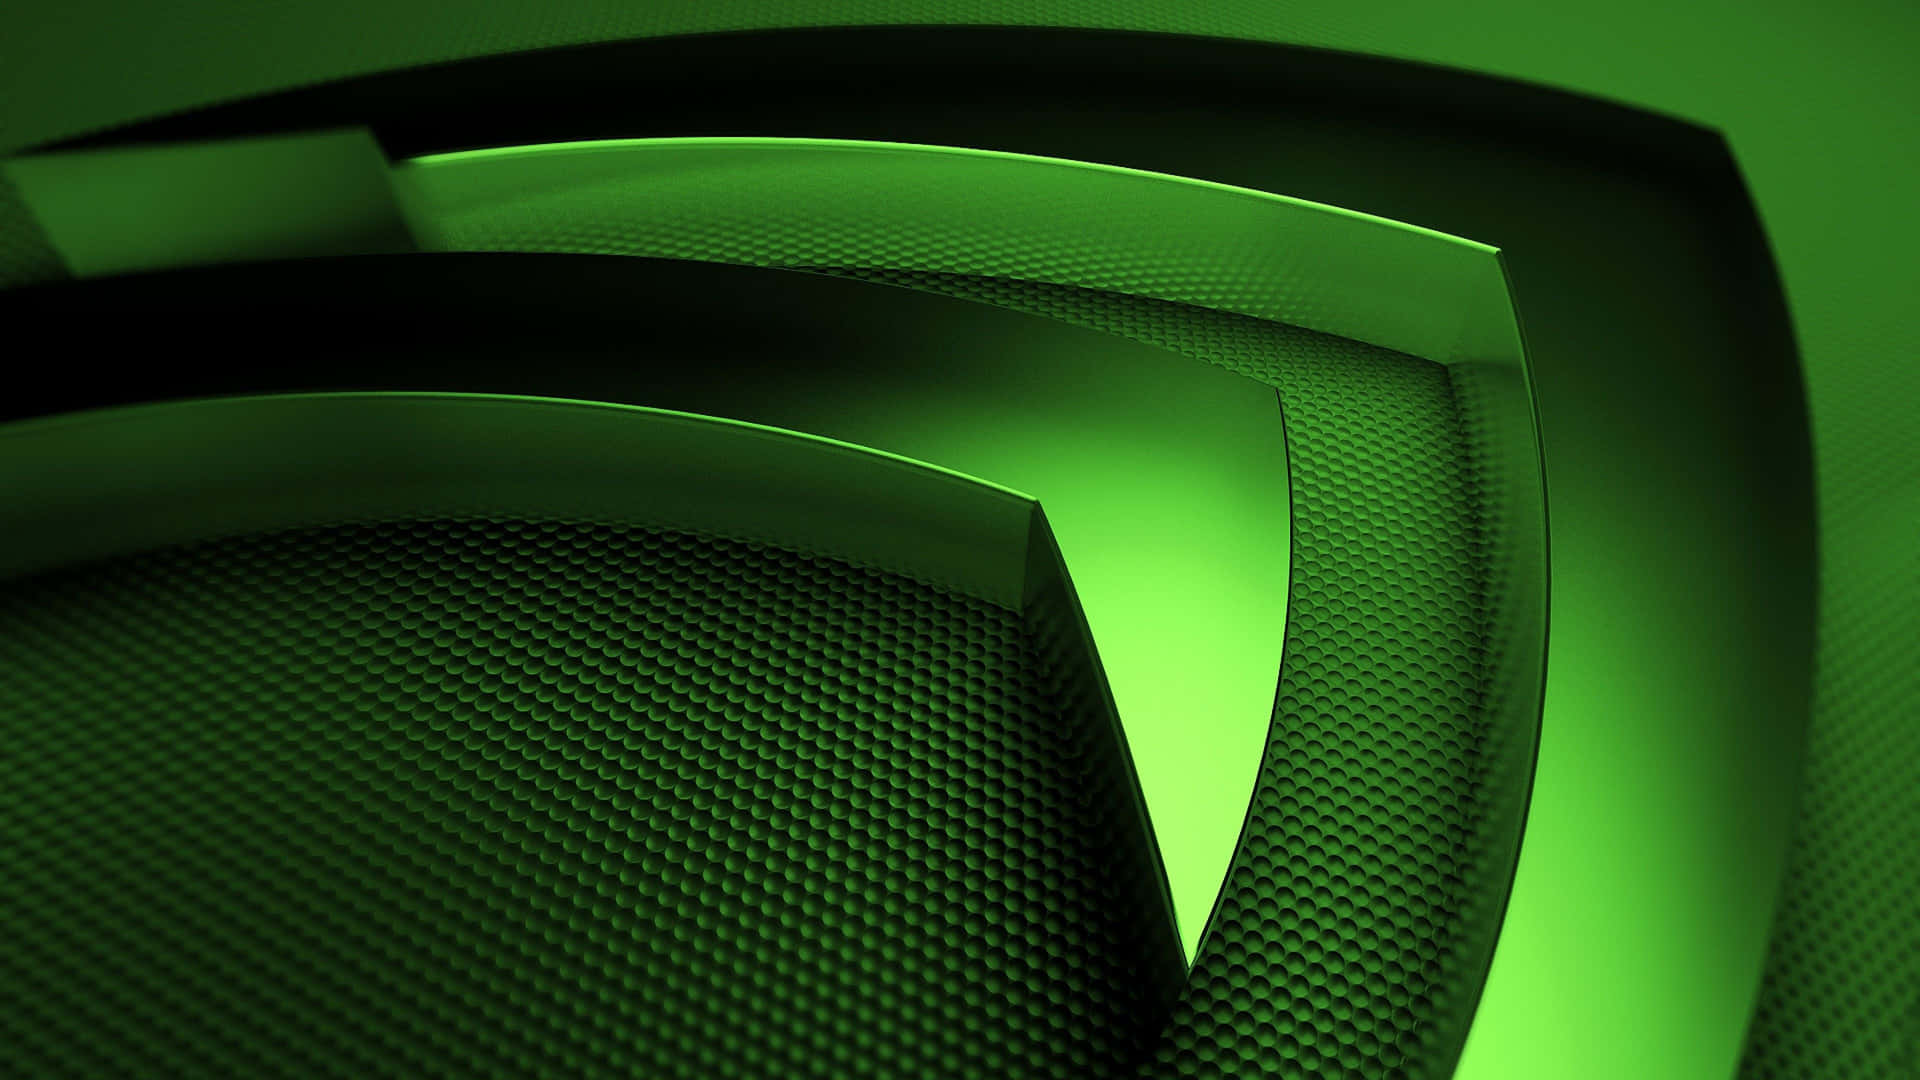 Impresionantefondo De Textura Verde Con El Logotipo De Nvidia